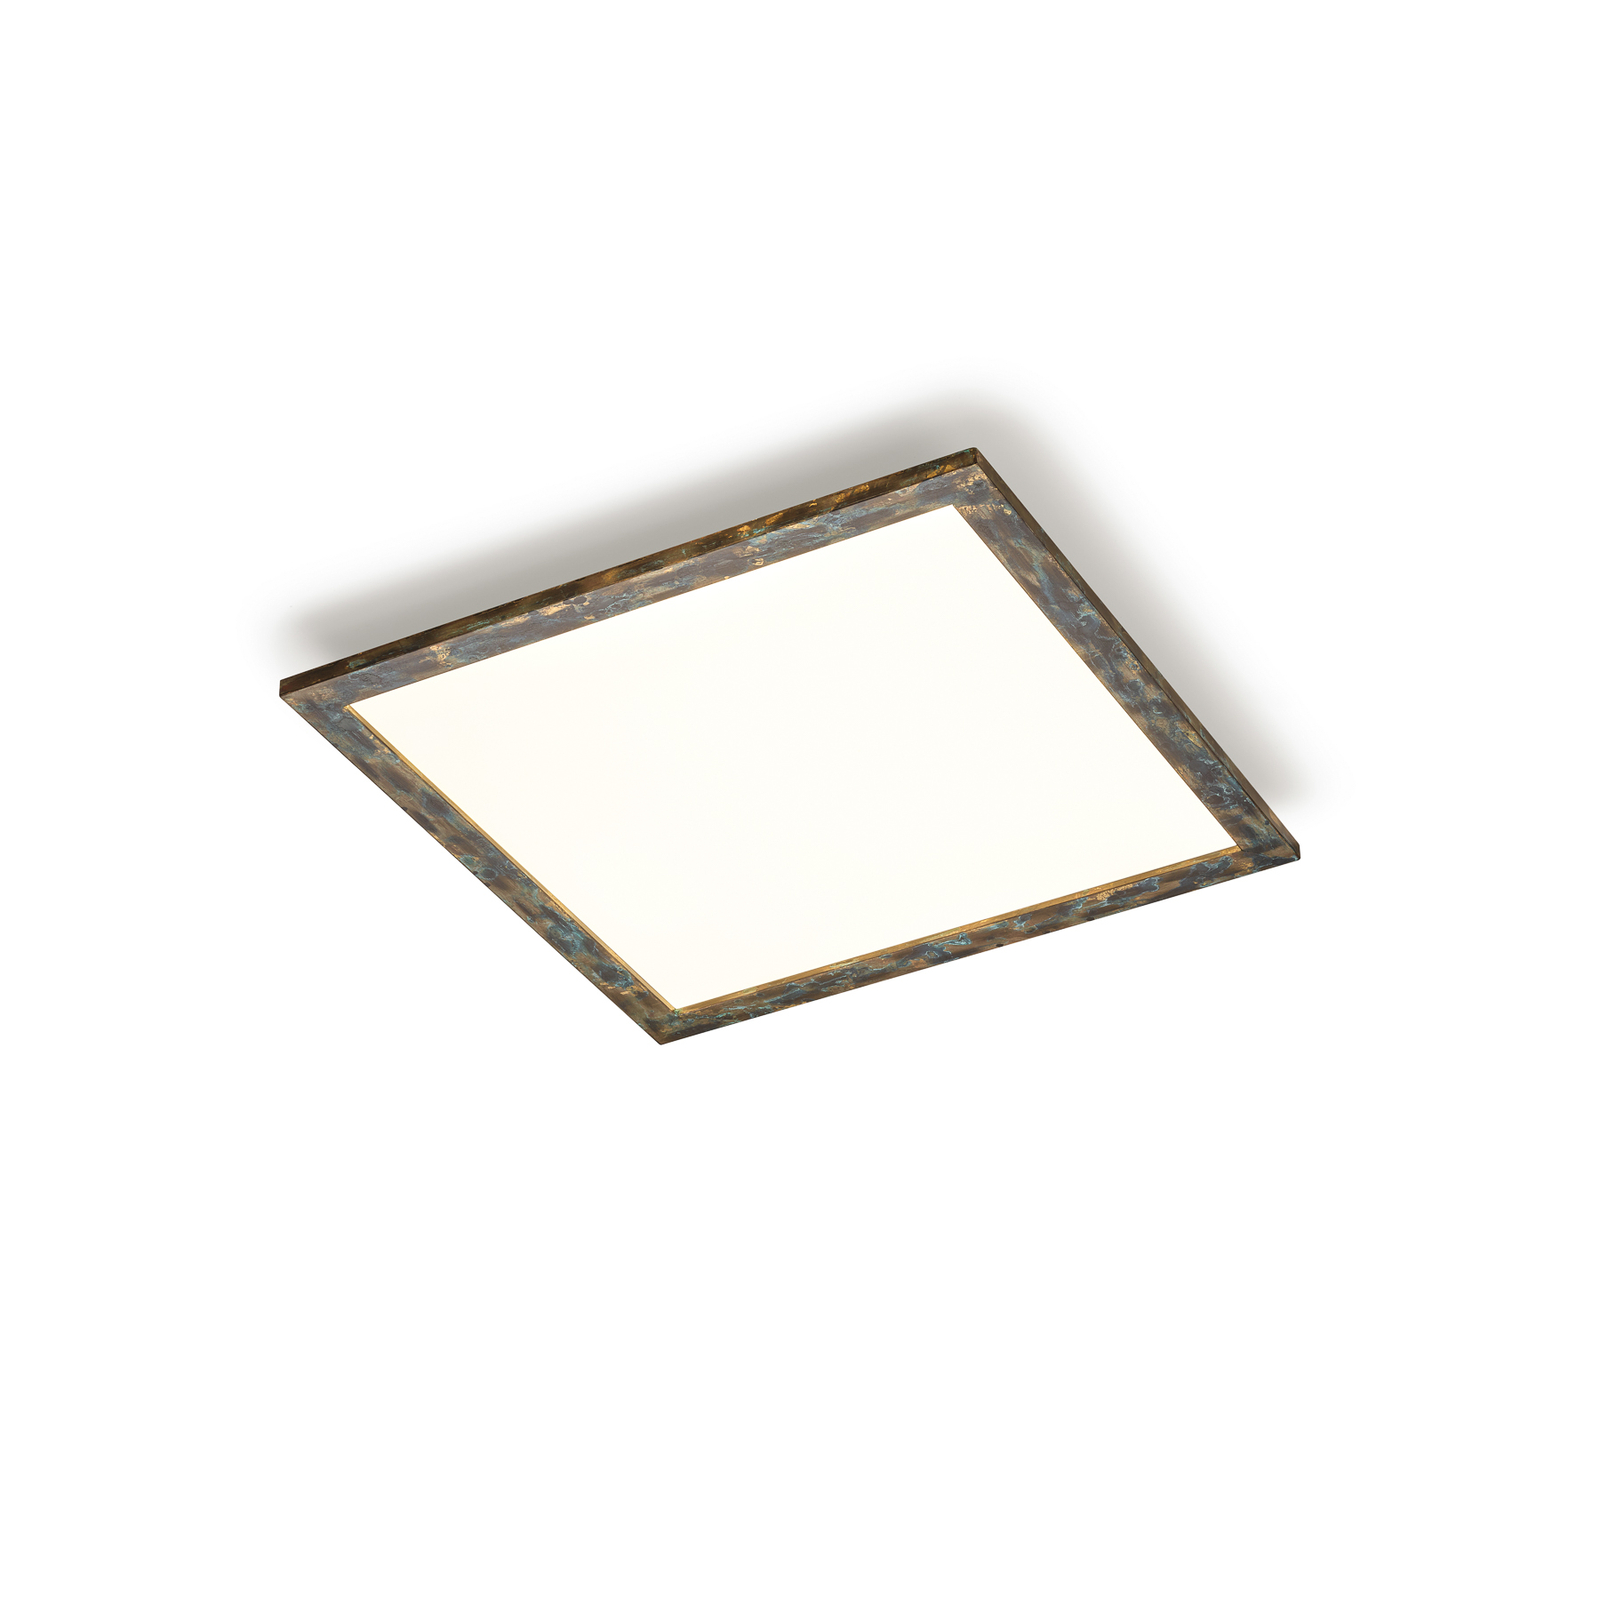 Quitani Aurinor LED paneel, goudkleurig gepatineerd, 68 cm